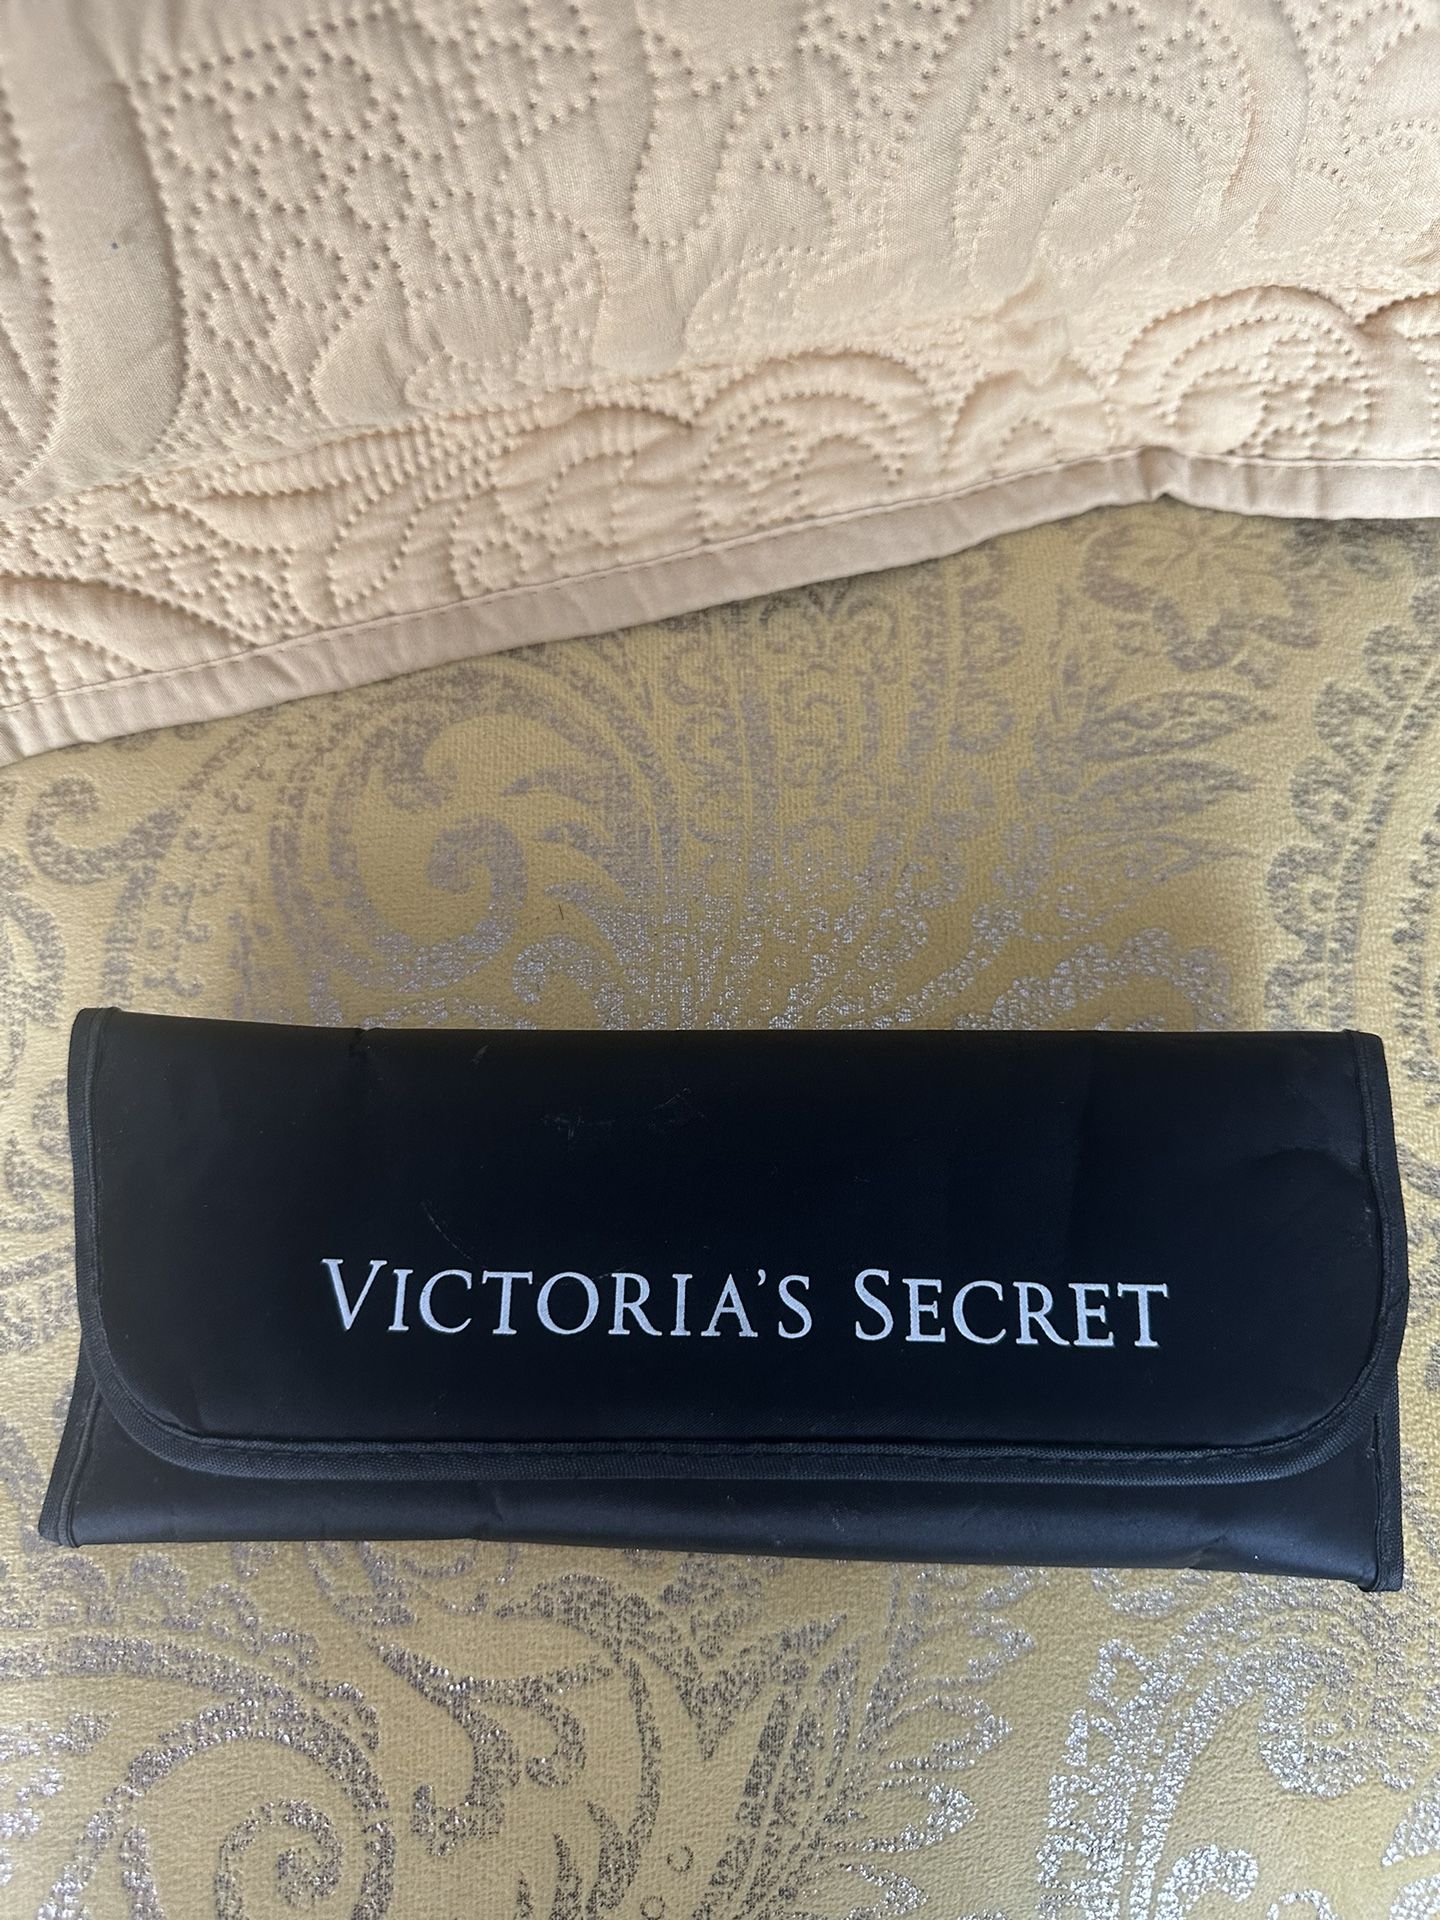 Victoria’s Secret 4 Piece Makeup Brush Set 